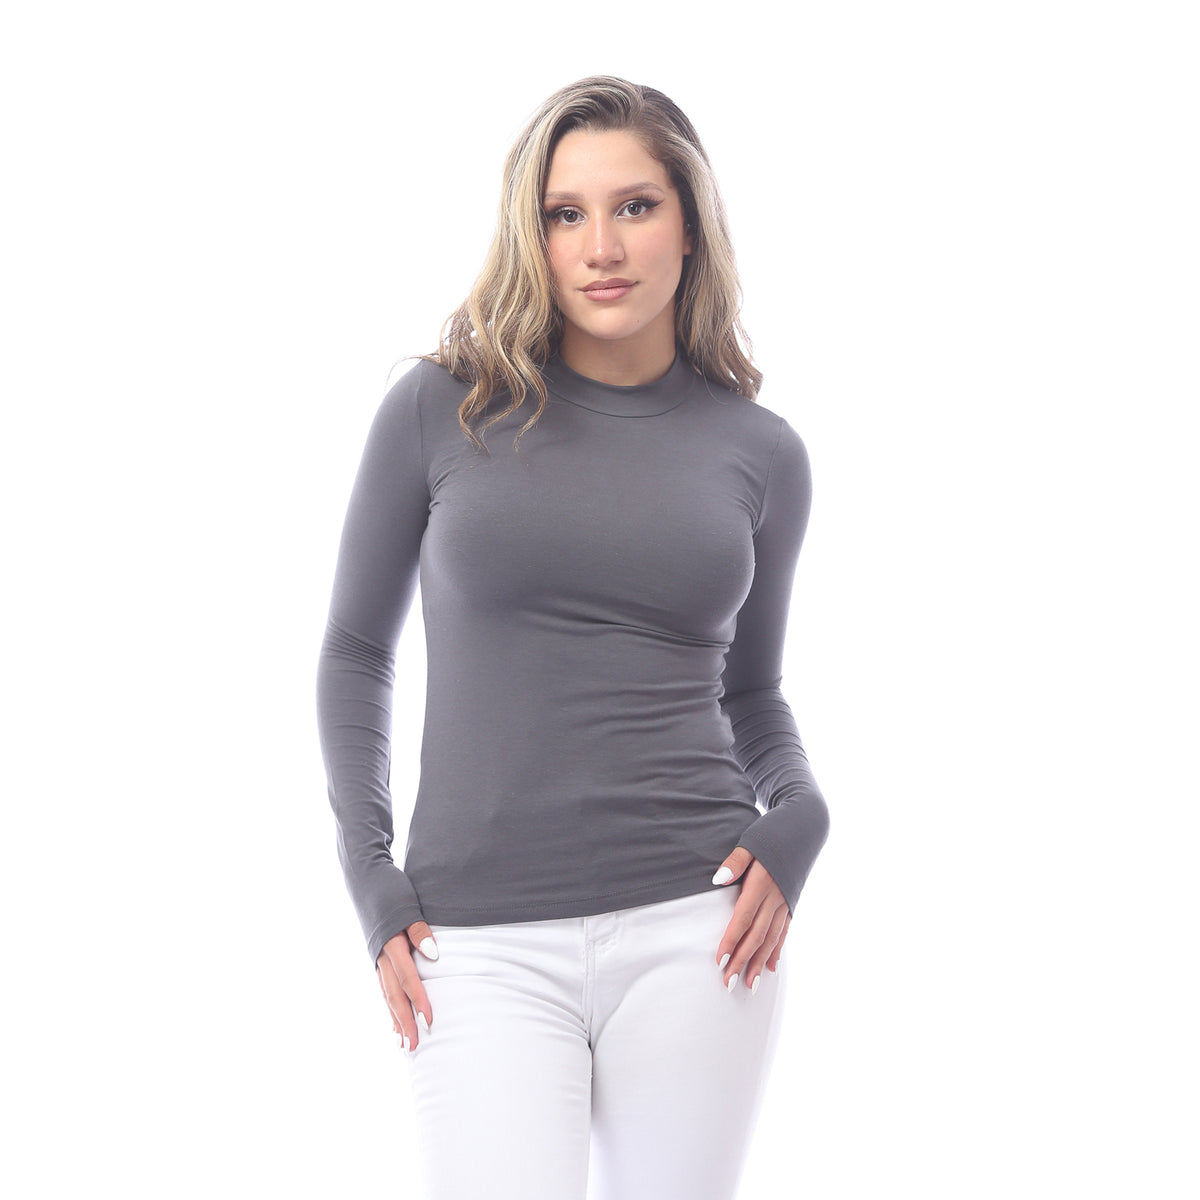 High neck long sleeve t-shirt for women,Grey